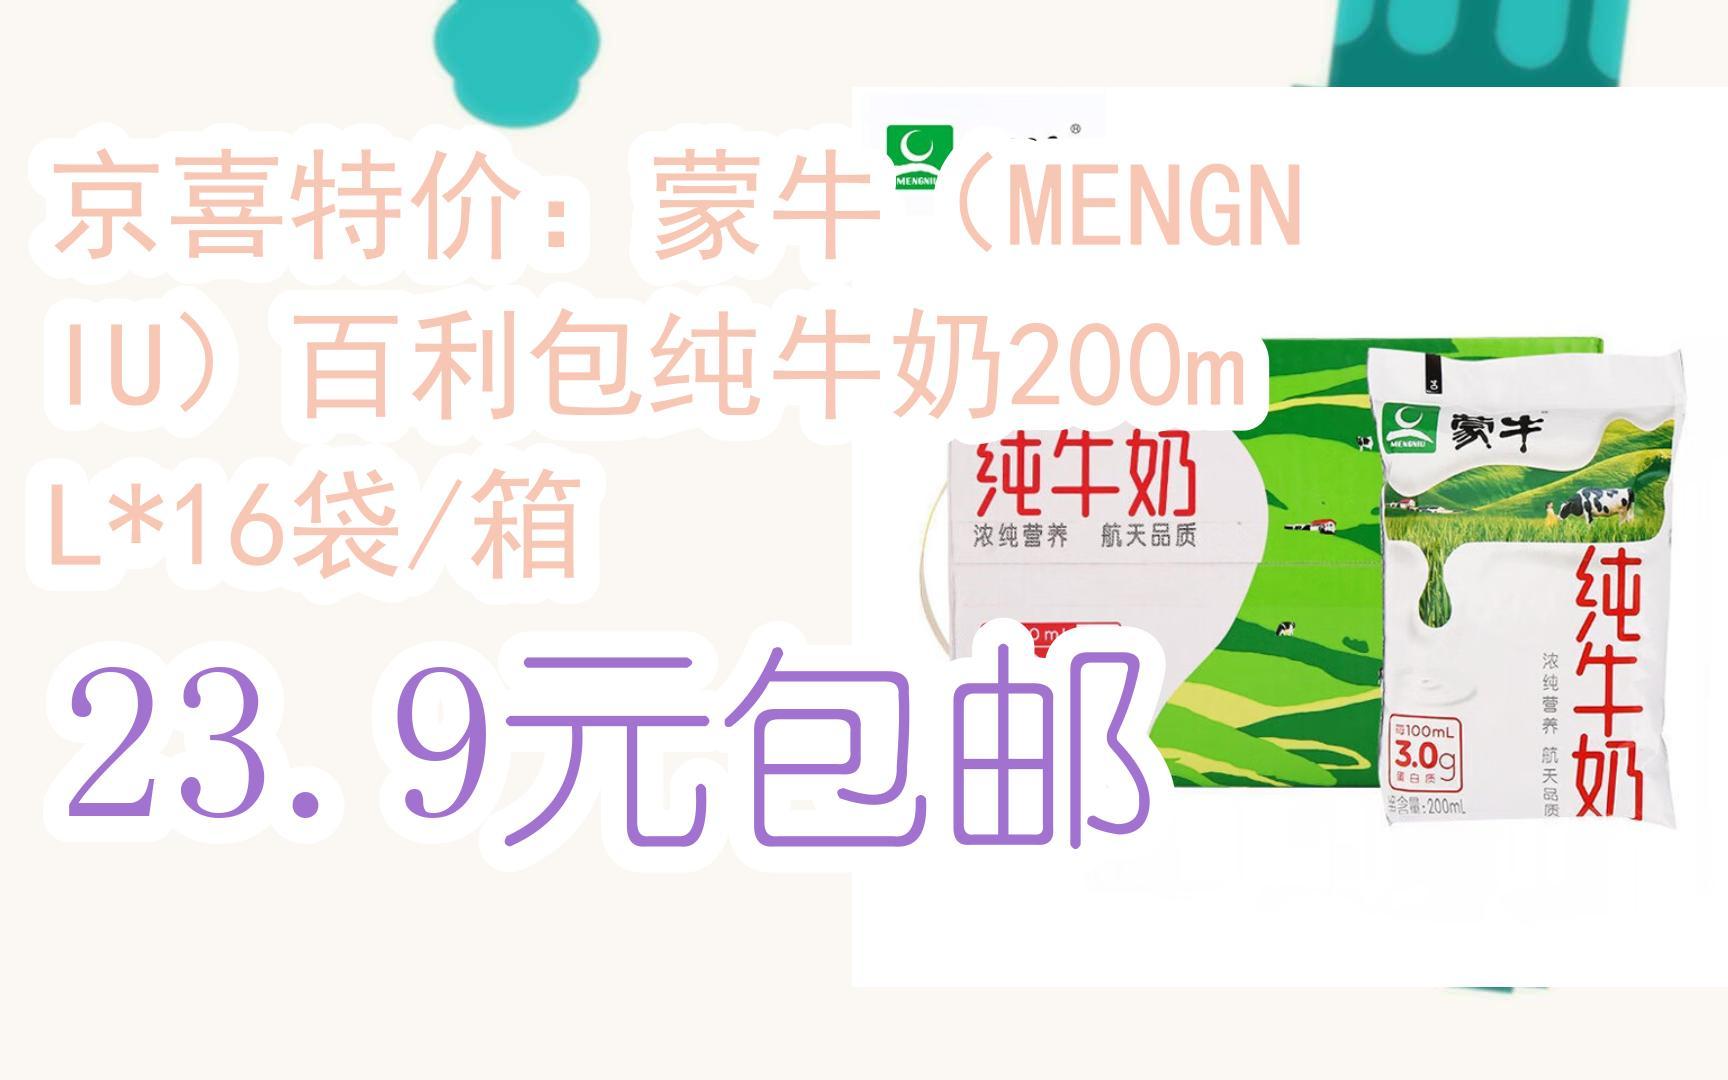 京喜特价:蒙牛(mengniu)百利包纯牛奶200ml*16袋/箱 239元包邮